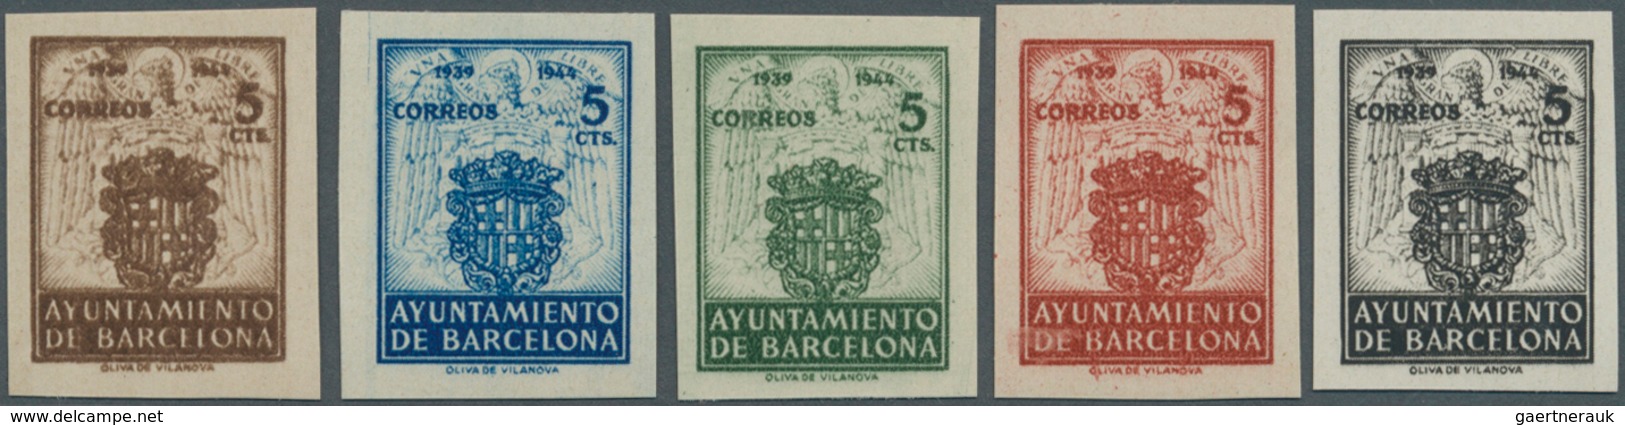 28301 Spanien - Zwangszuschlagsmarken Für Barcelona: 1944, Coat Of Arms Set Of Five IMPERFORATE 5c. Stamps - Impots De Guerre